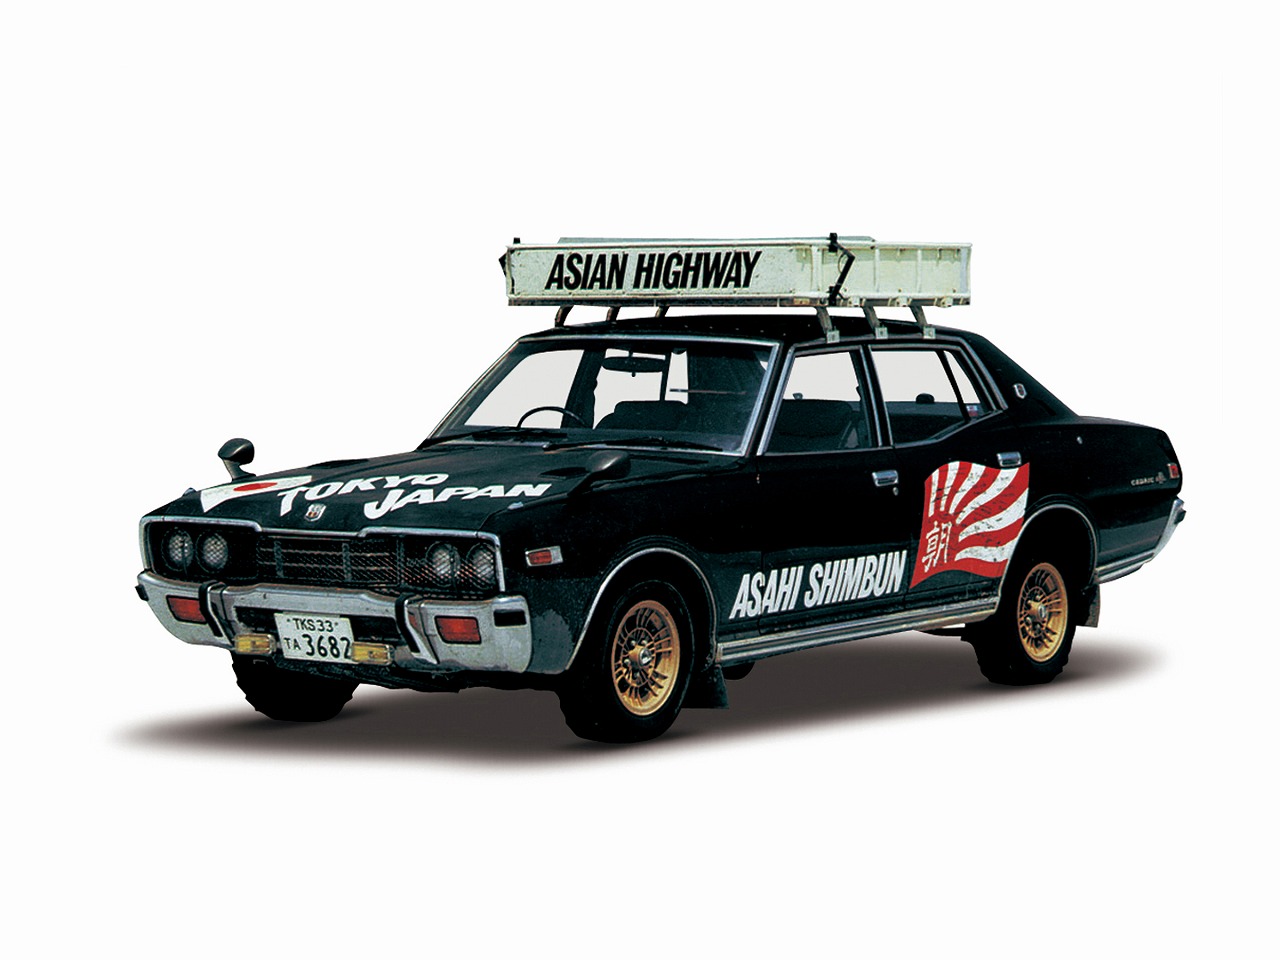 旧車 日産セドリック 昭和の高級車 昭和62年 1987年版 価格表付き